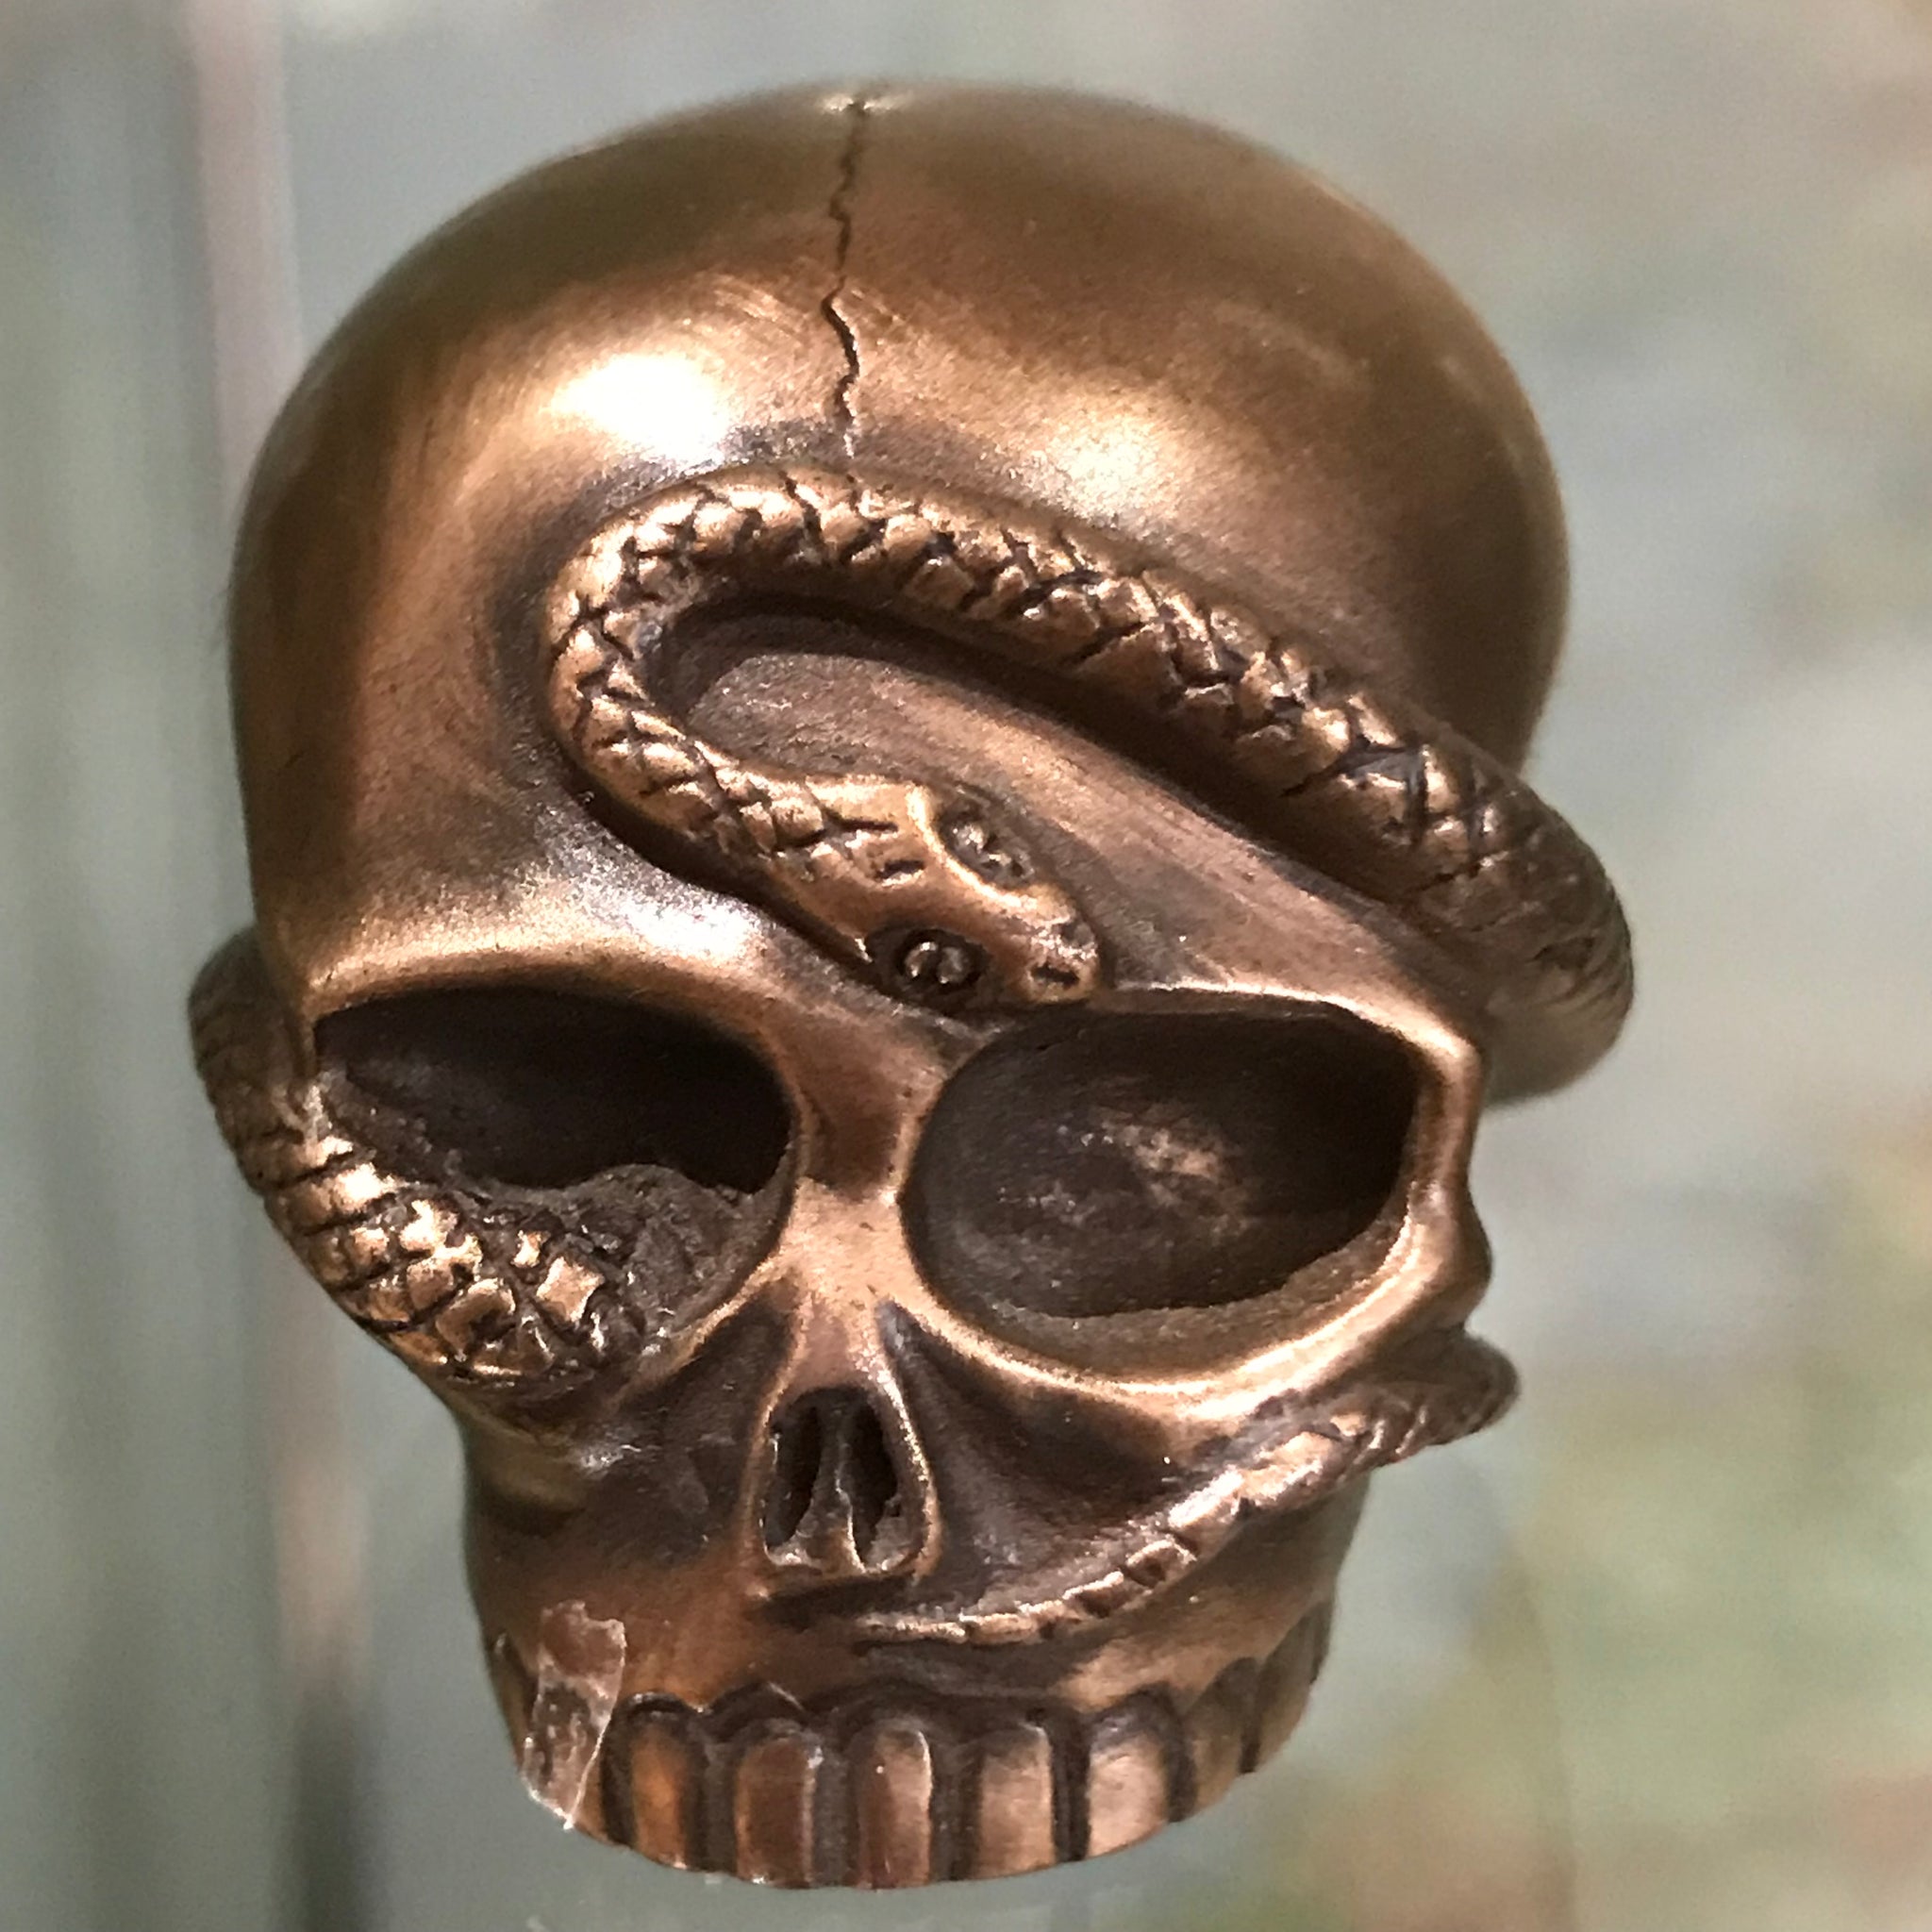 Mini skull with snake